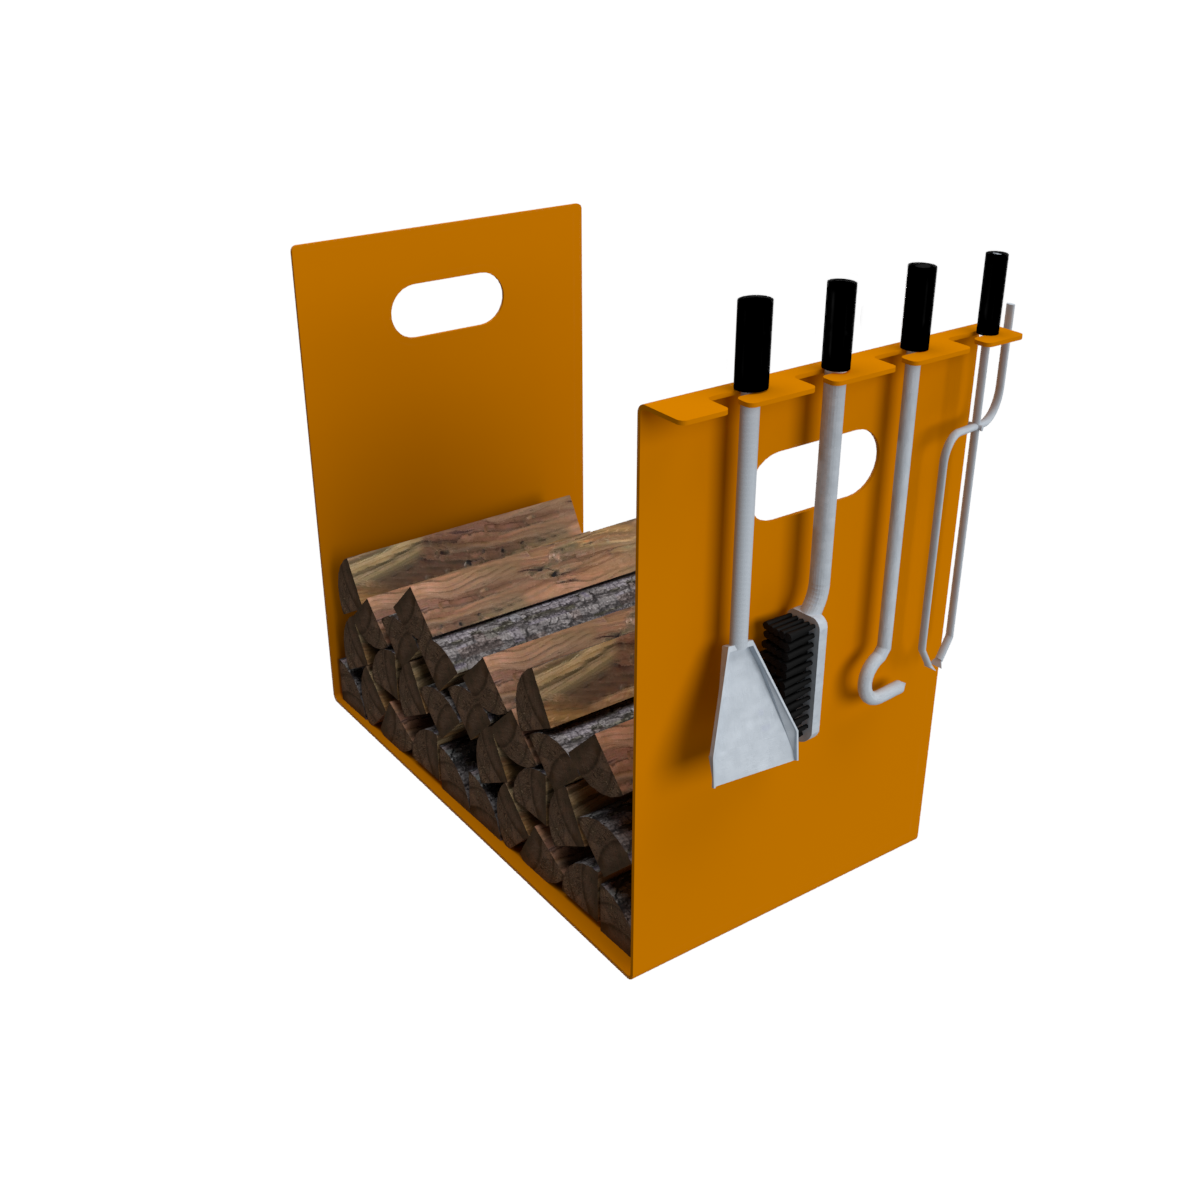 Porte-bûches design en métal - support à ustensiles - orange